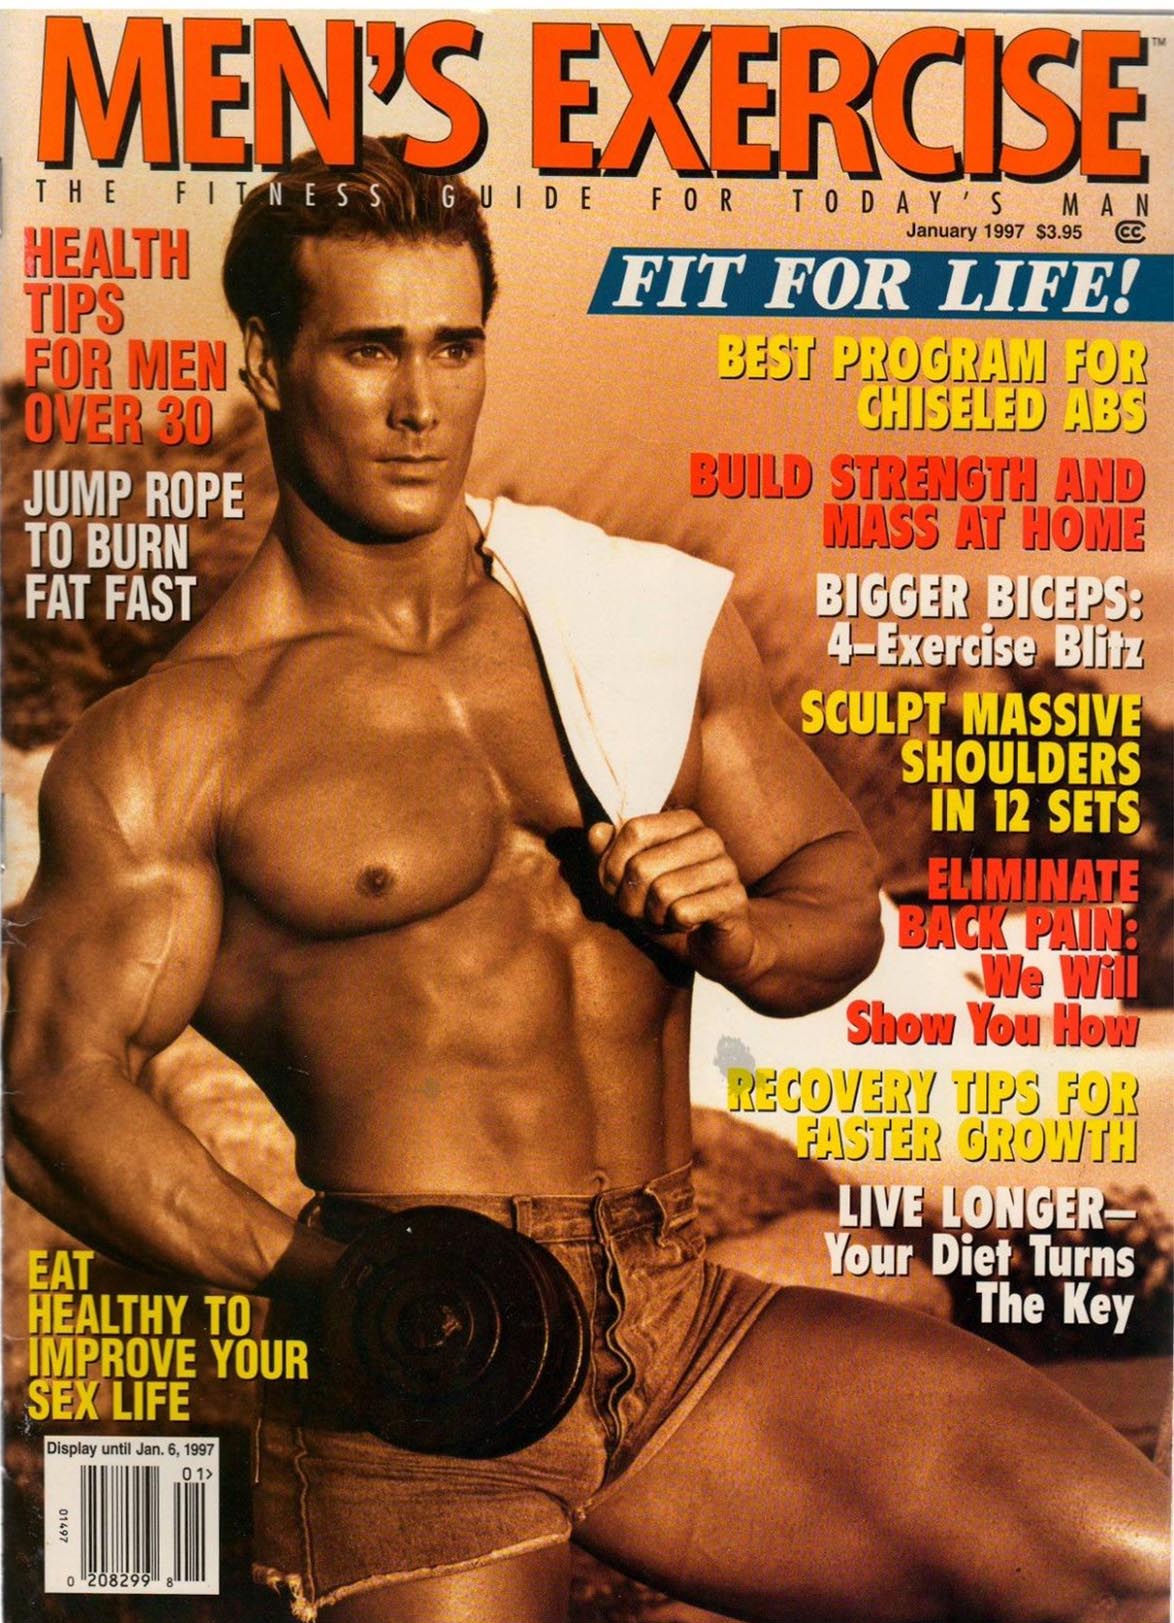 Men's Exercise January 1997 magazine back issue Men's Exercise magizine back copy 